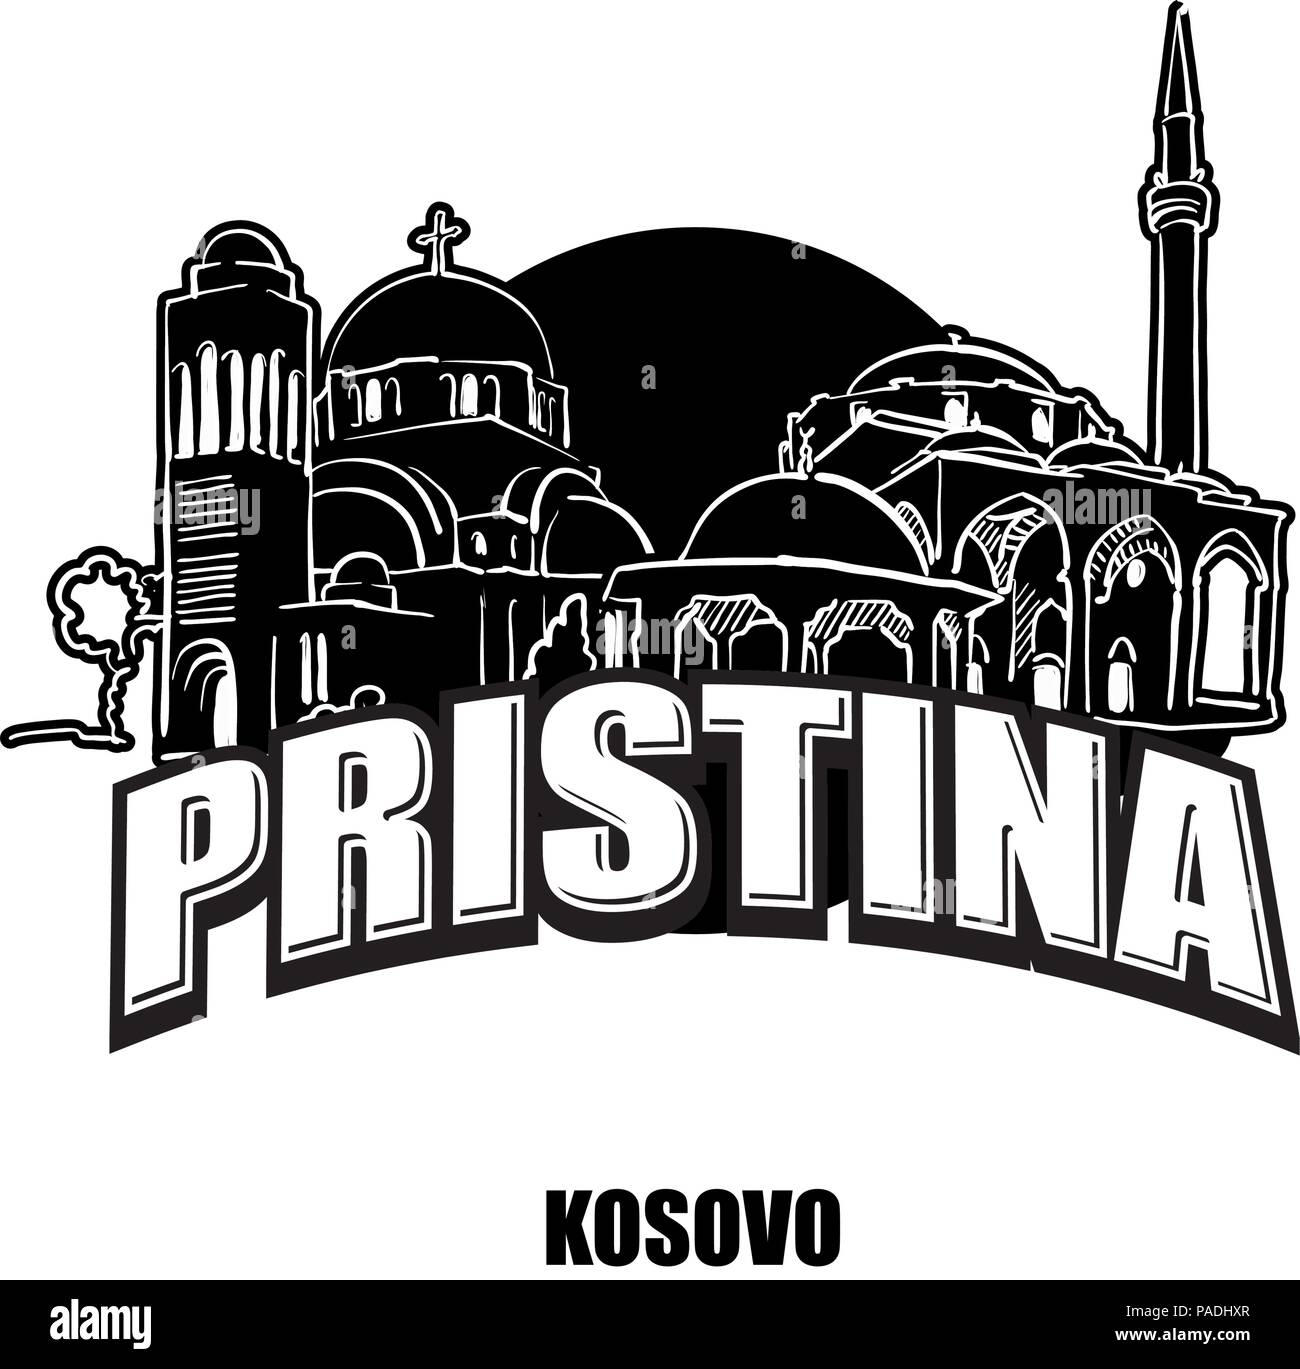 Prstina, Kosovo, en blanco y negro logotipo para impresiones de alta calidad. Dibujo Vectorial dibujada a mano. Ilustración del Vector